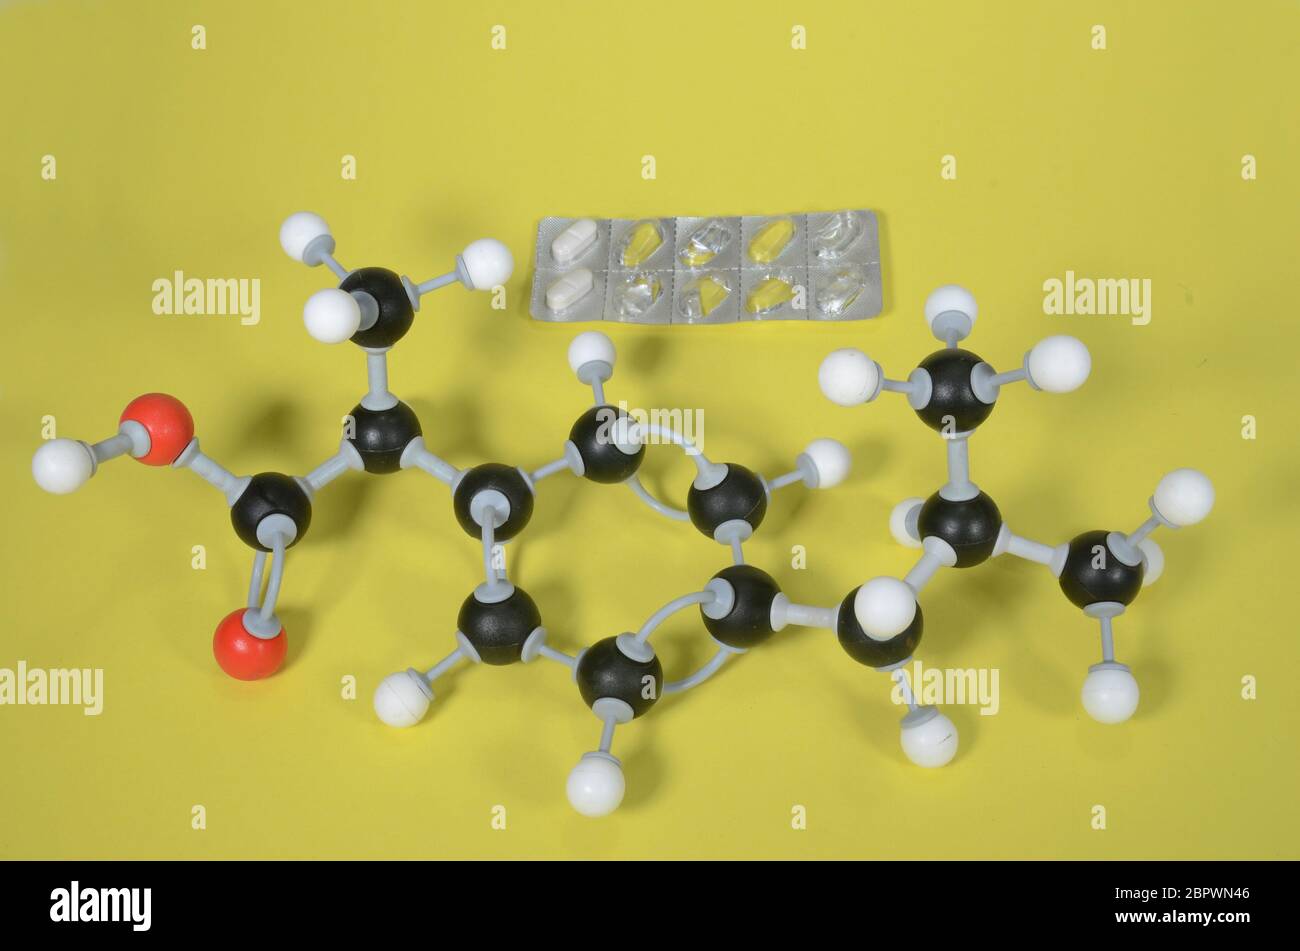 Modello molecolare di Ibubrofen, il principio attivo in molti antidolorifici. Il bianco è idrogeno, il nero è carbonio, il rosso è ossigeno e il blu è azoto. Foto Stock